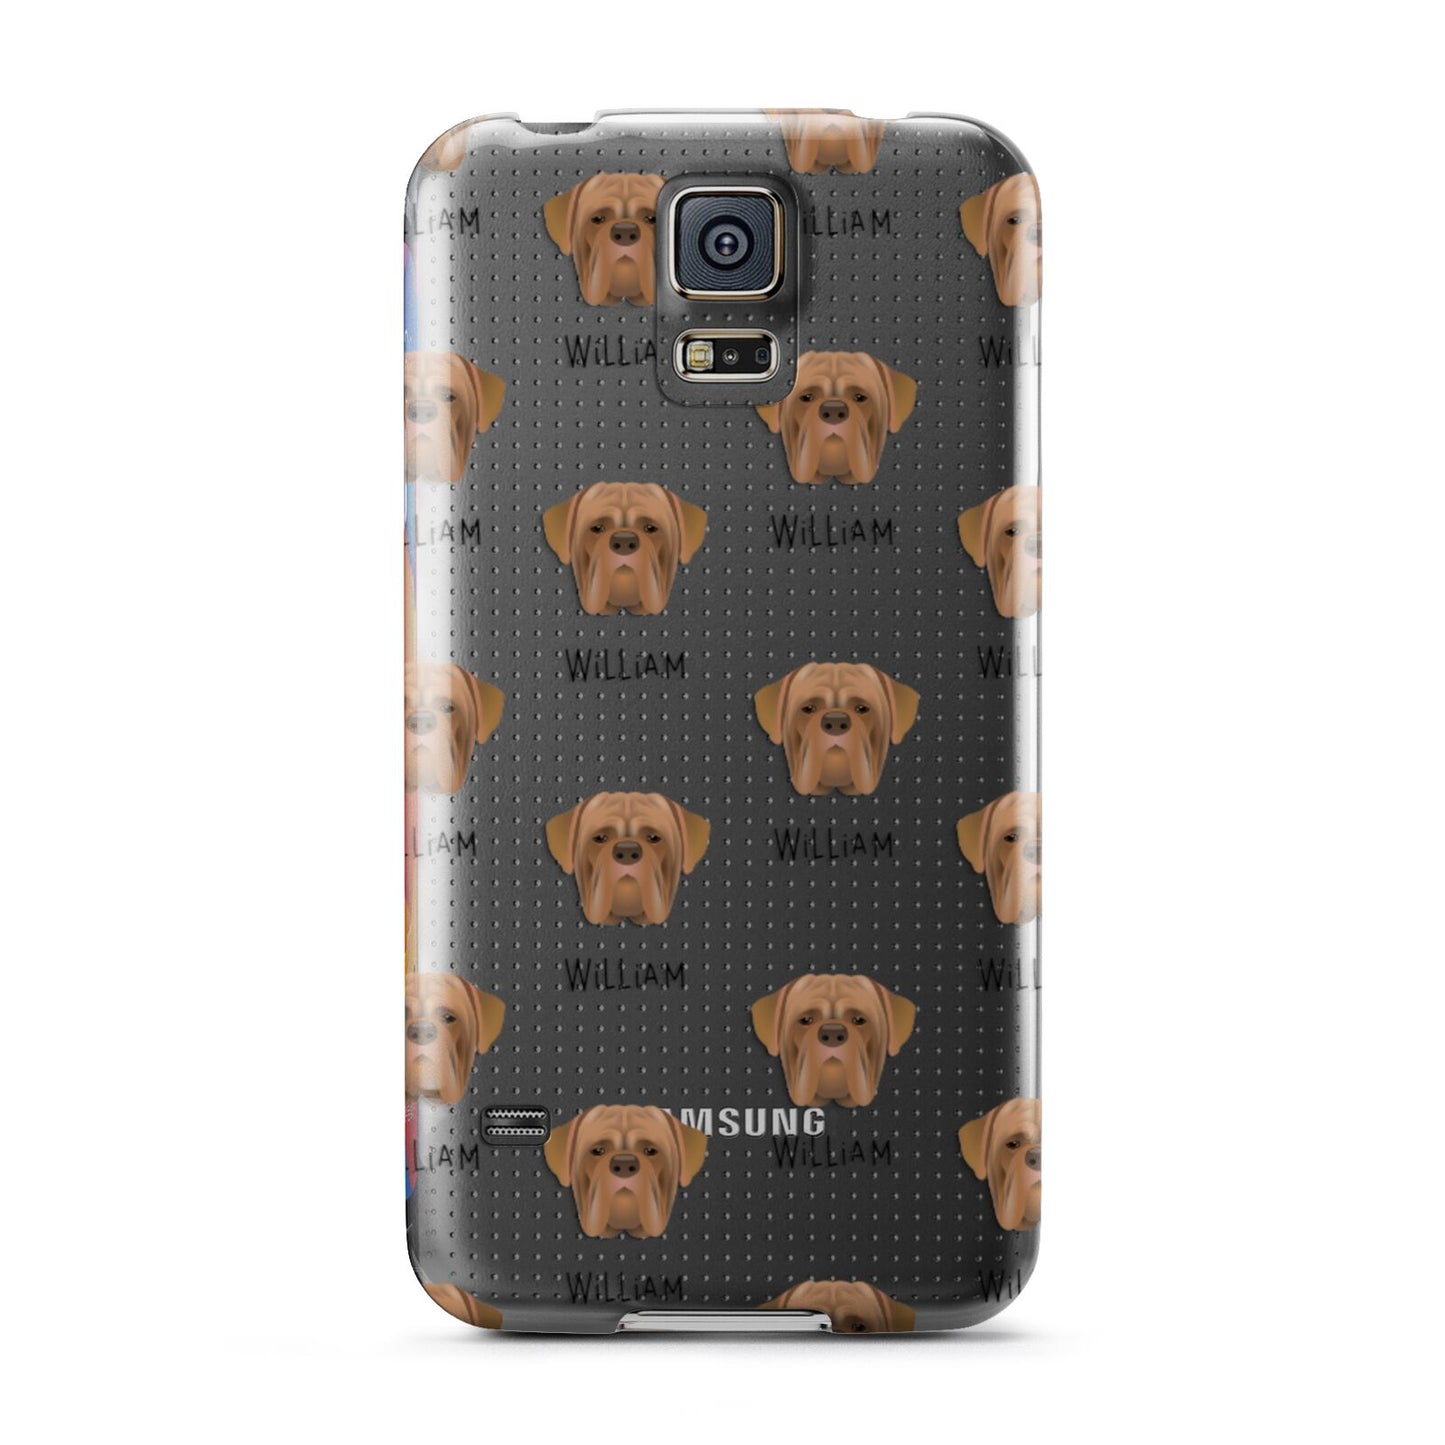 Dogue de Bordeaux Icon with Name Samsung Galaxy S5 Case